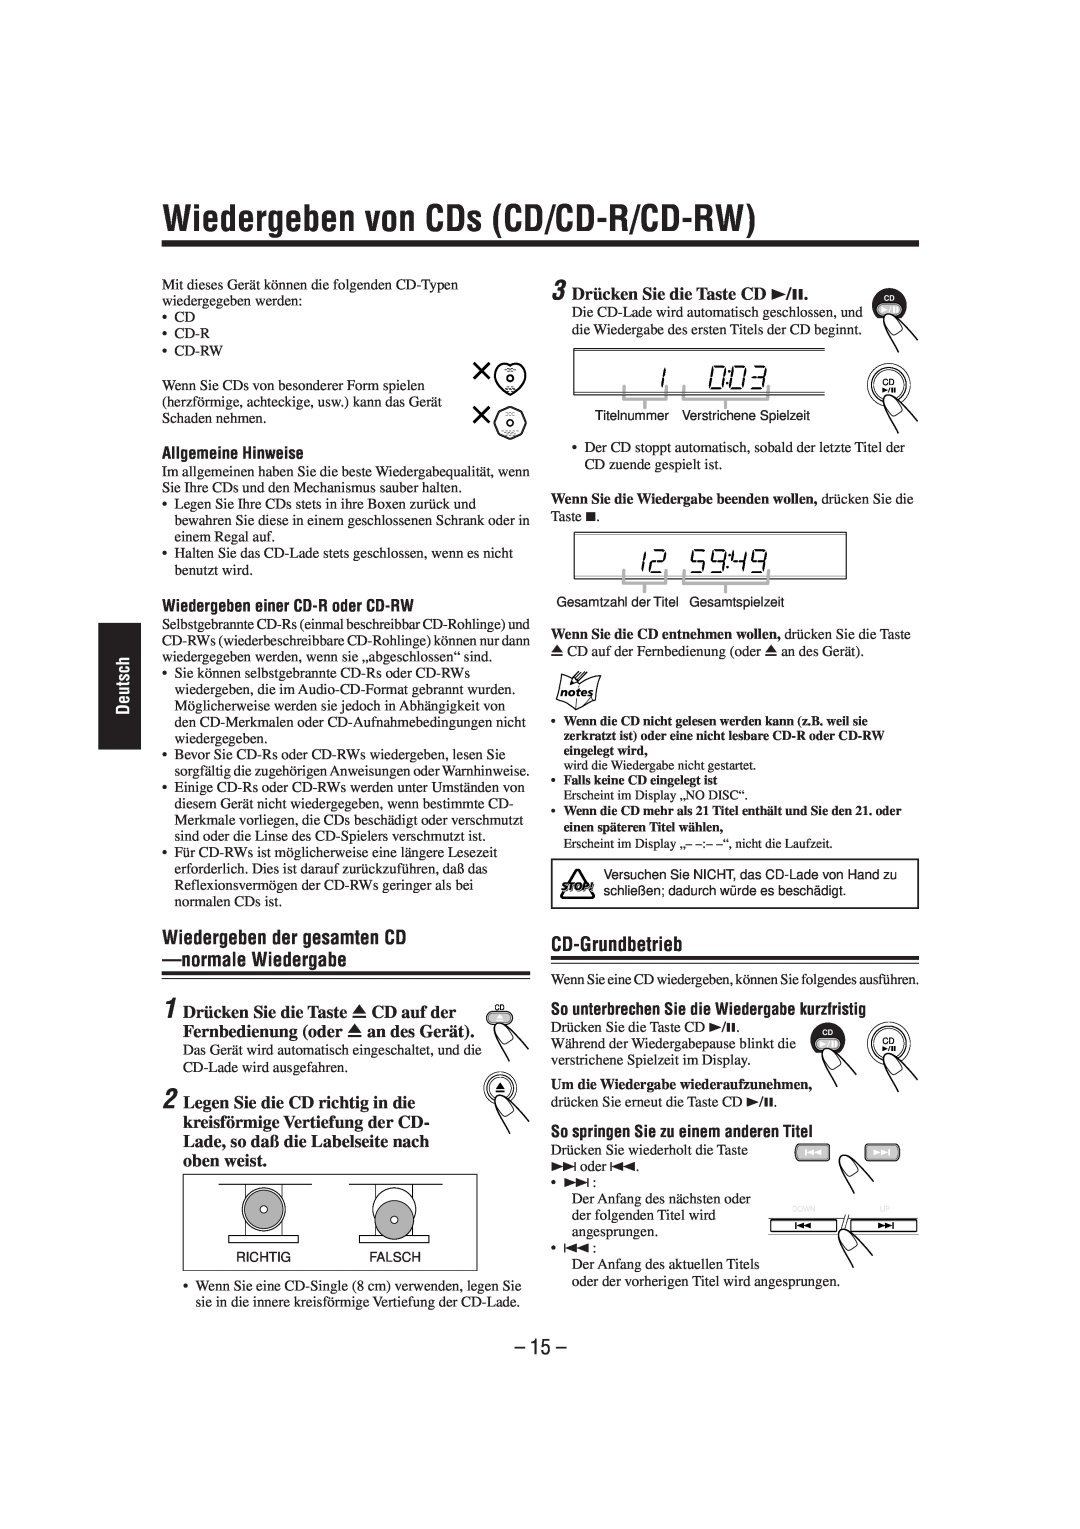 JVC SP-UXL30 manual Wiedergeben von CDs CD/CD-R/CD-RW, Wiedergeben der gesamten CD -normaleWiedergabe, CD-Grundbetrieb, 15 